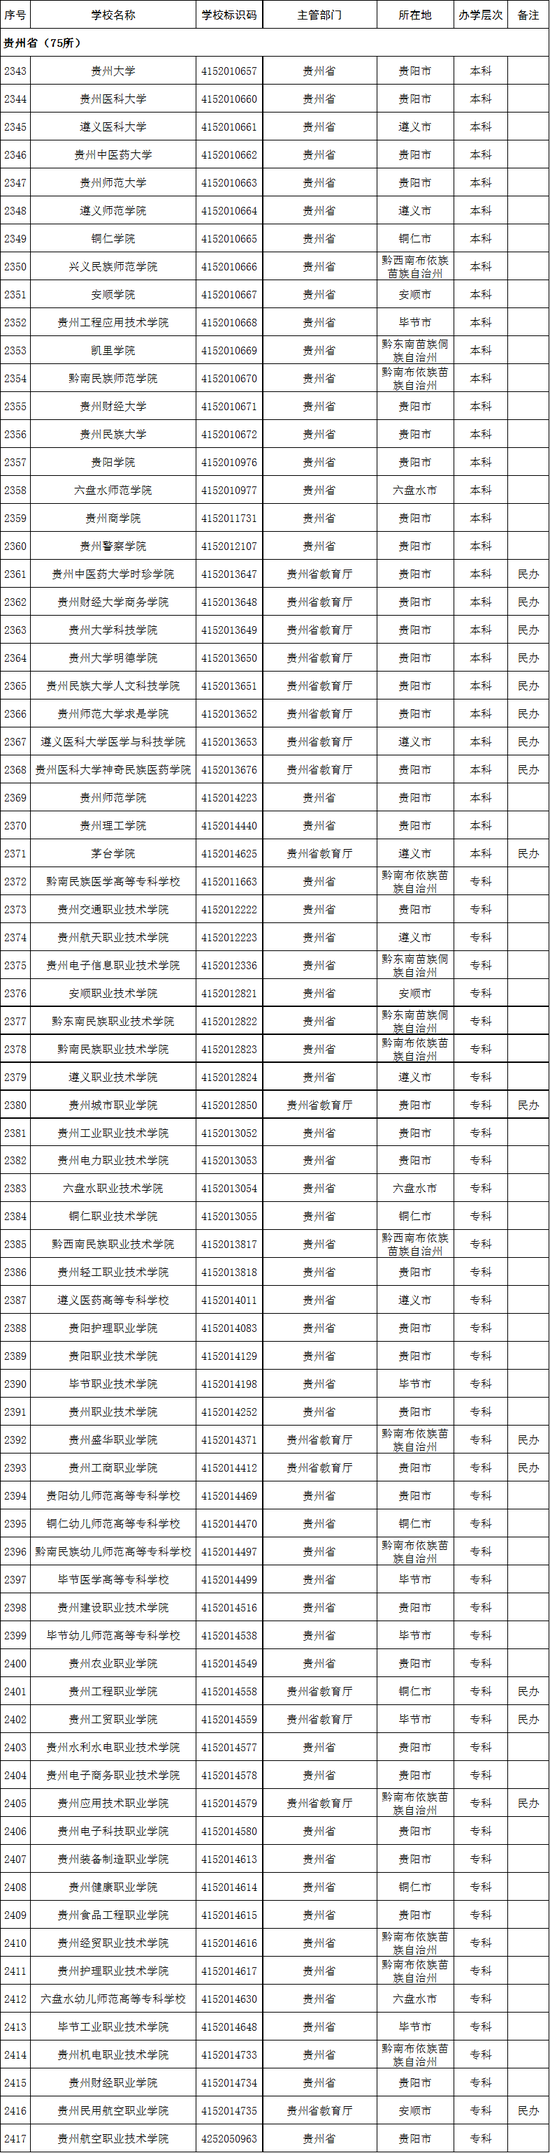 2020年贵州省高校名单(75所)